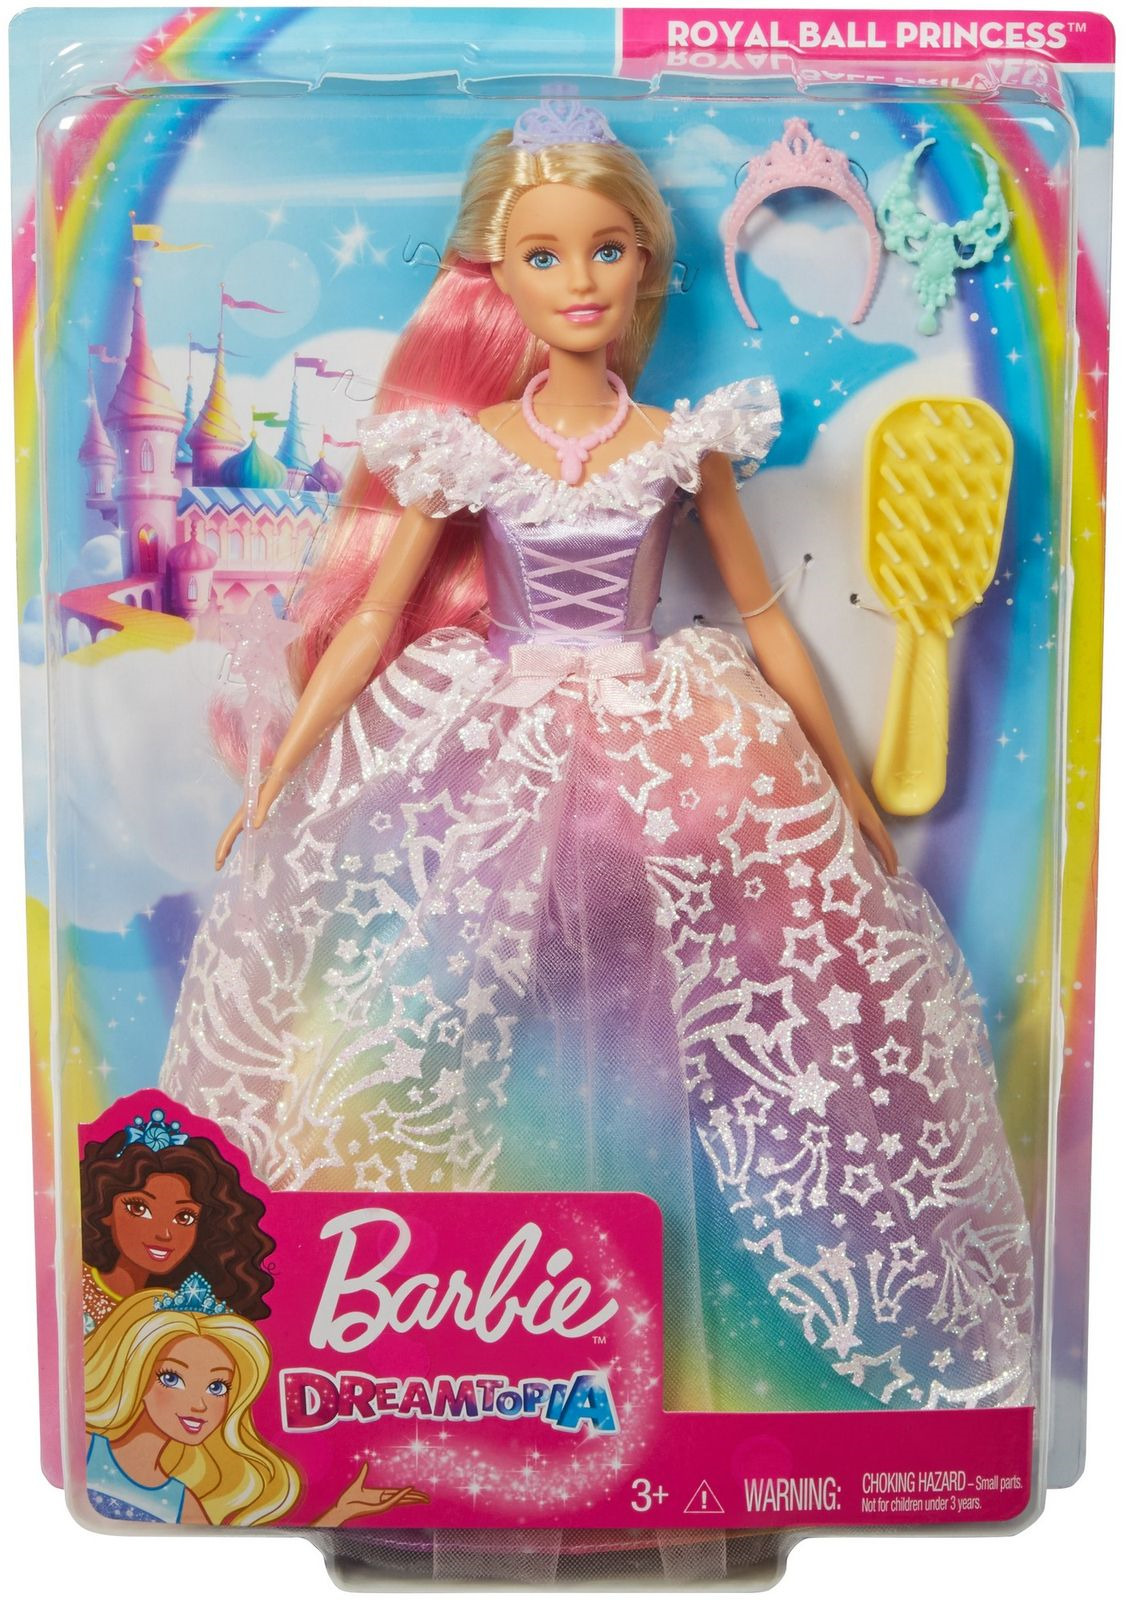 ebay adora dolls